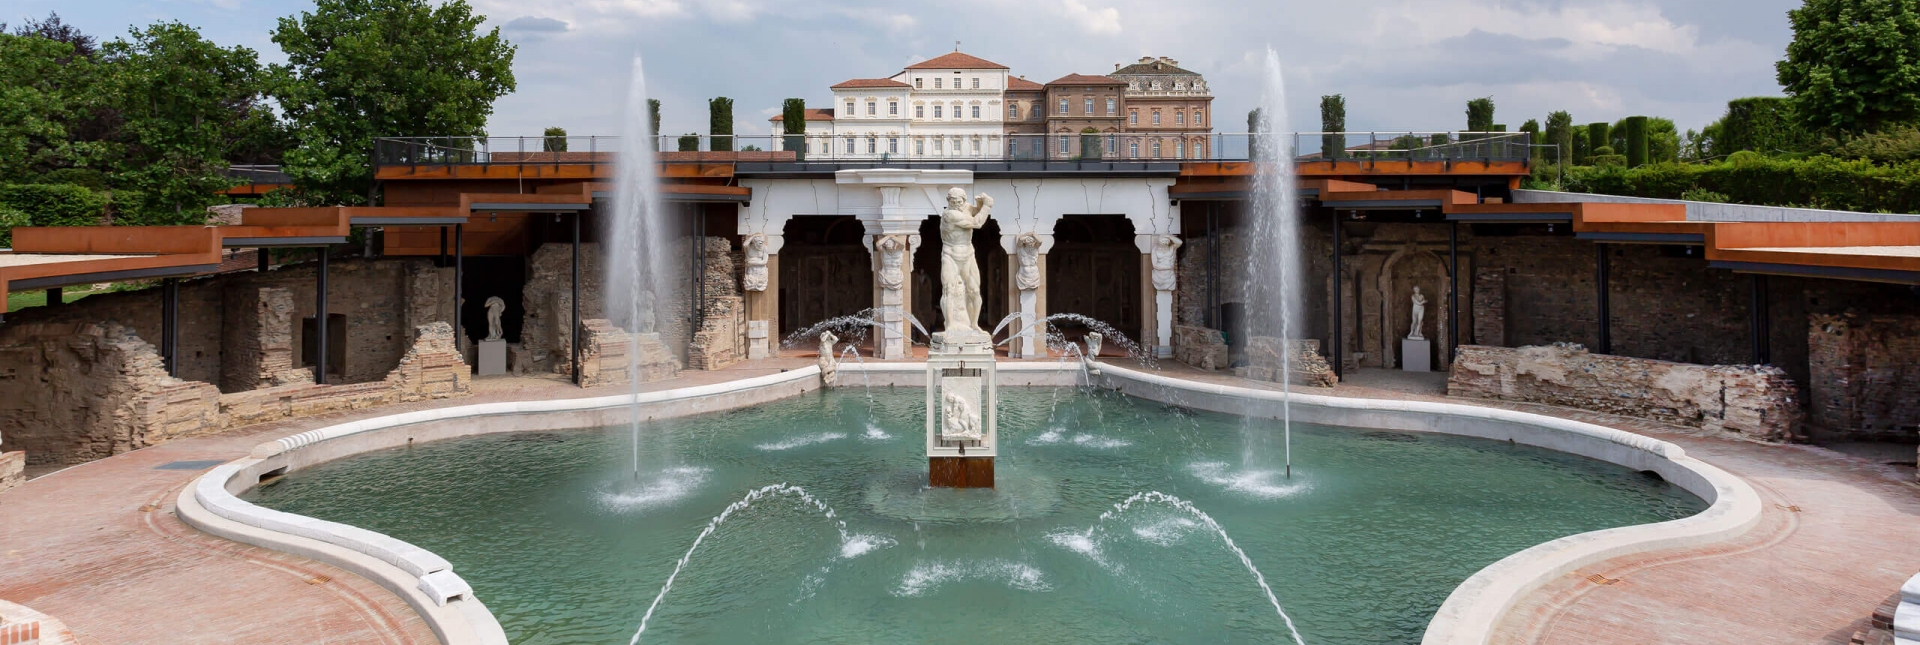 La Fontana dell'Ercole - Foto di Paolo Rubino